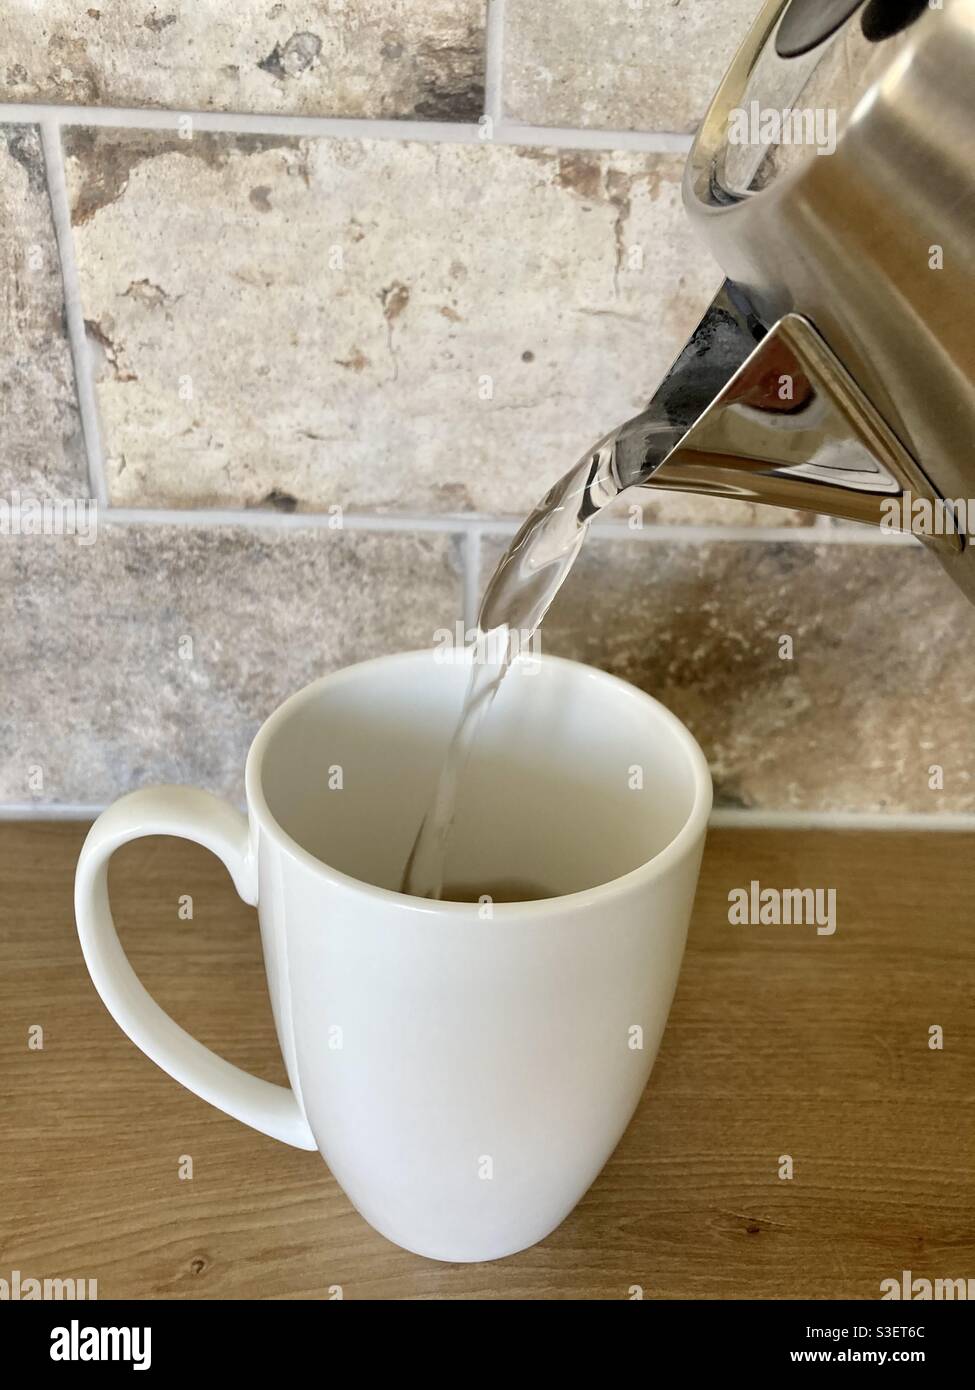 Gieße heißes Wasser in einen weißen Becher, um Tee zuzubereiten Stockfoto